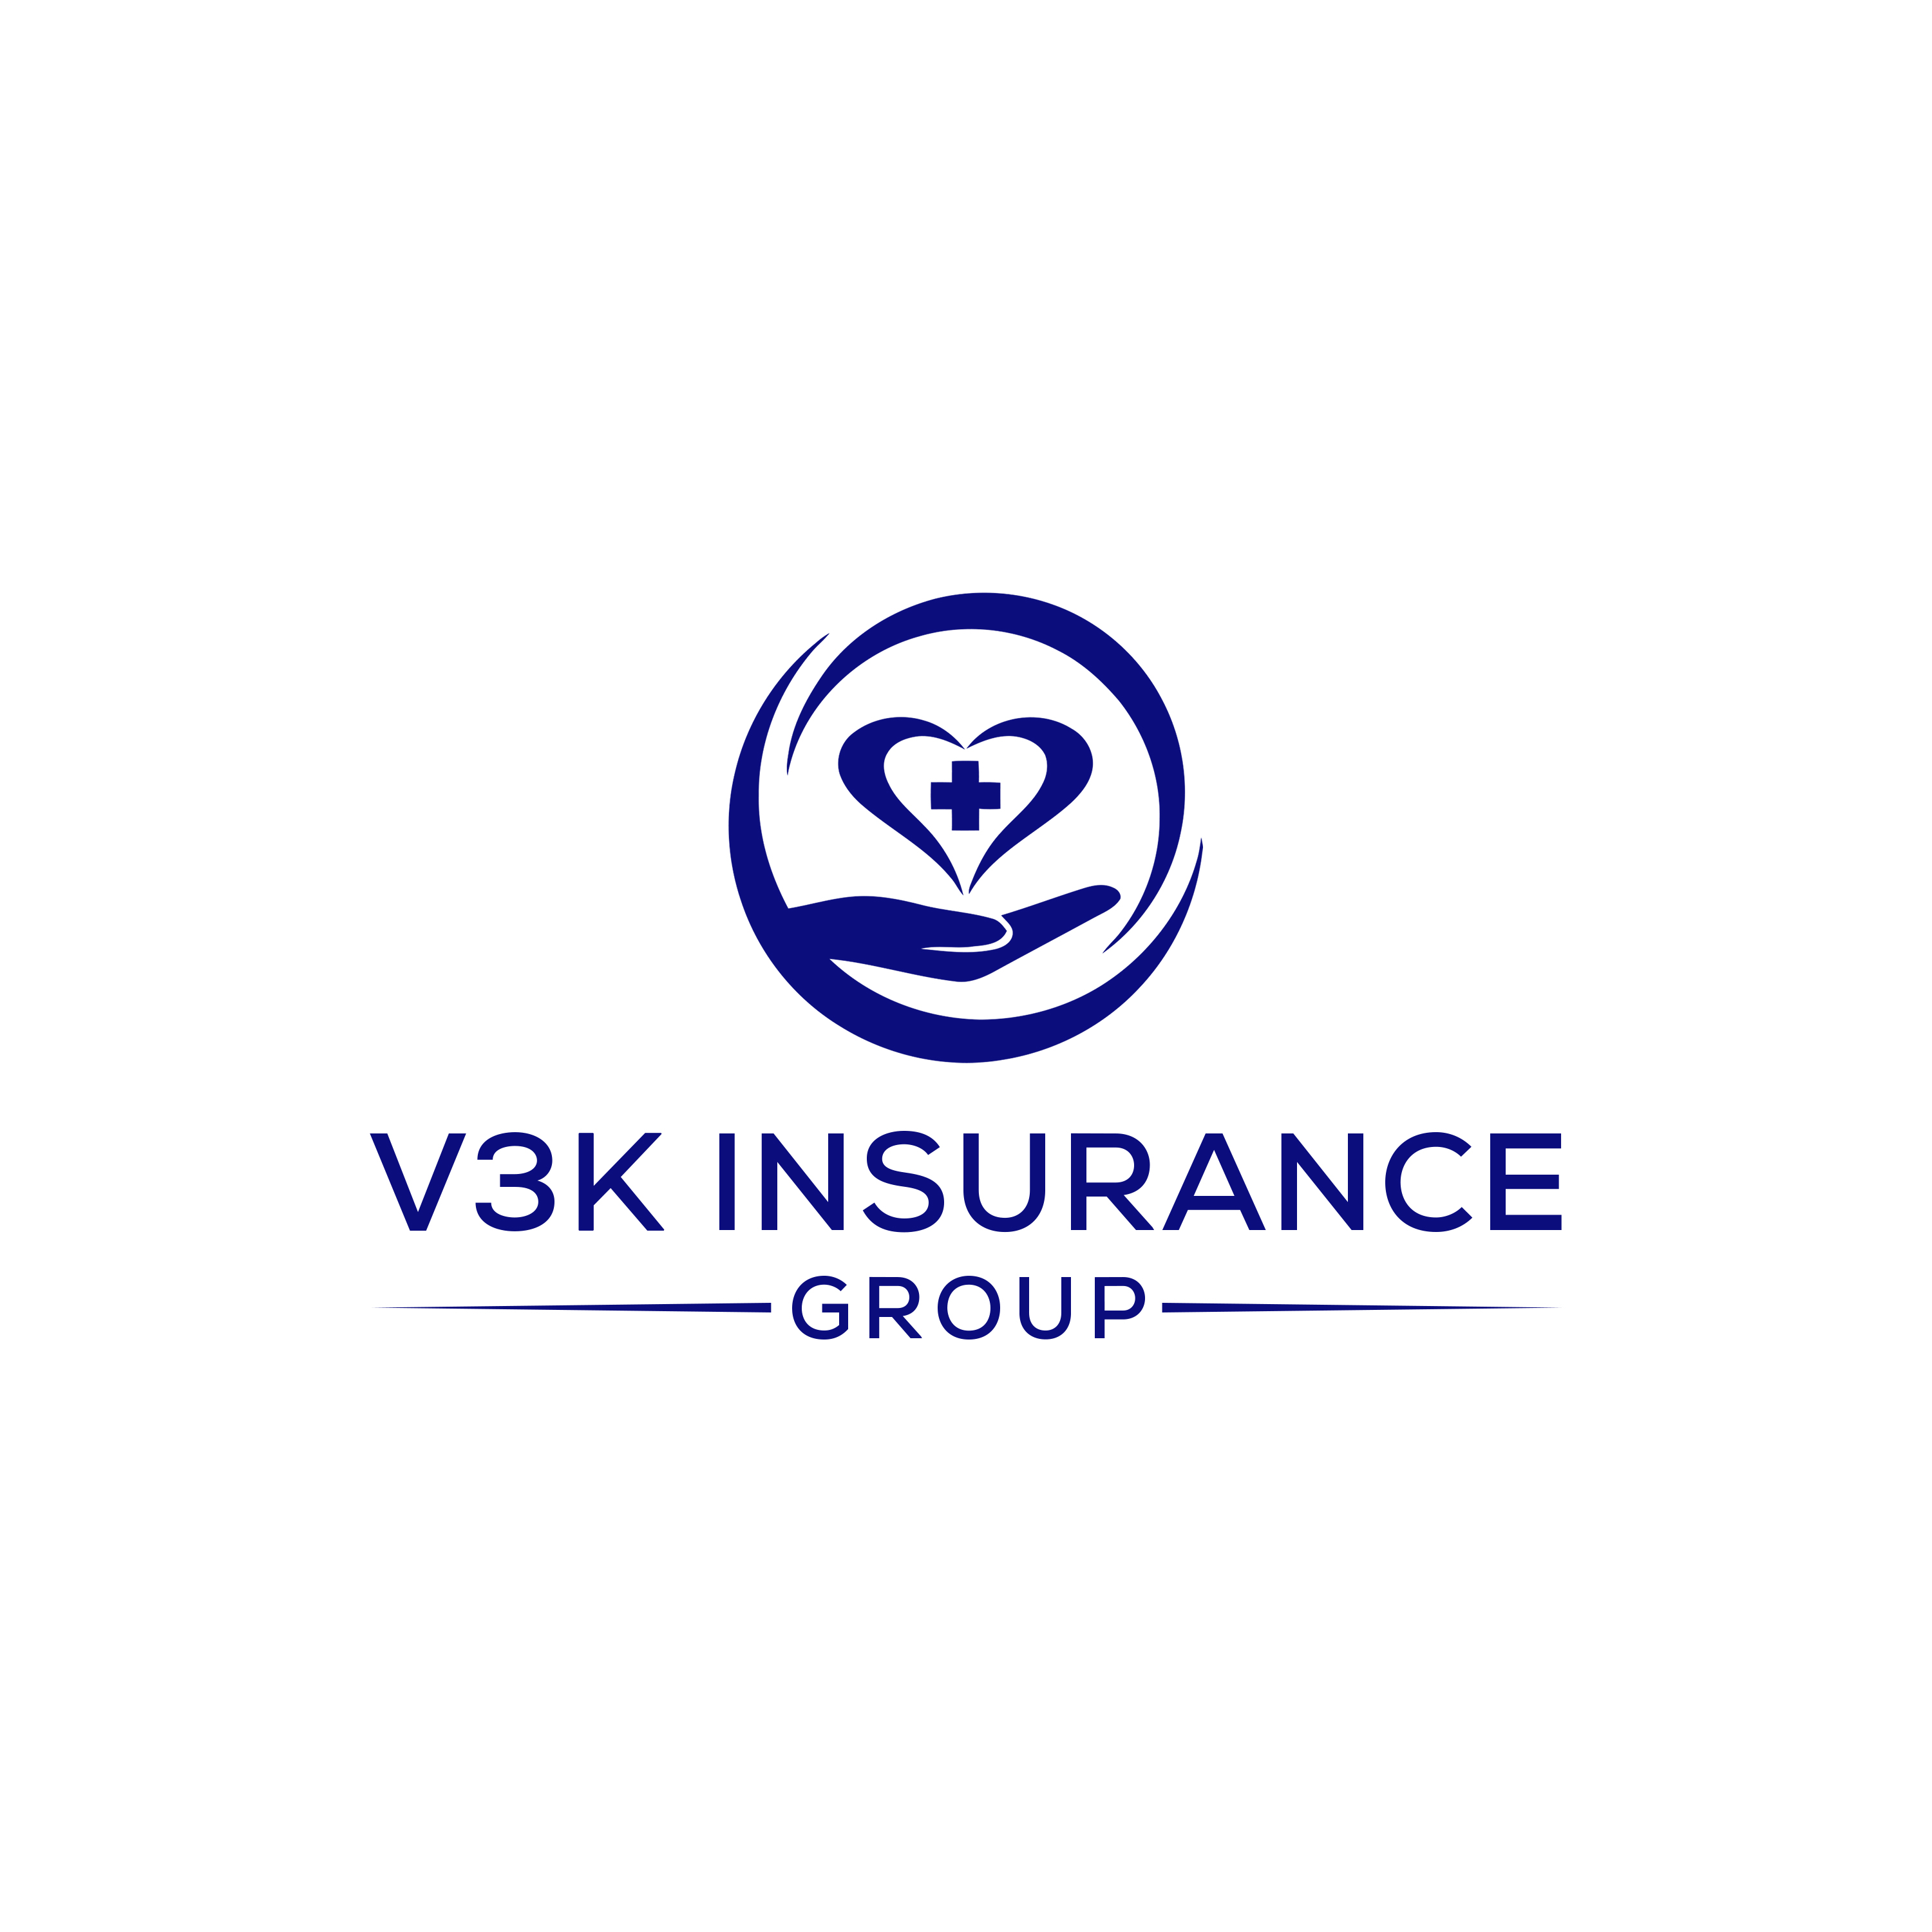 V3K Insurance Group